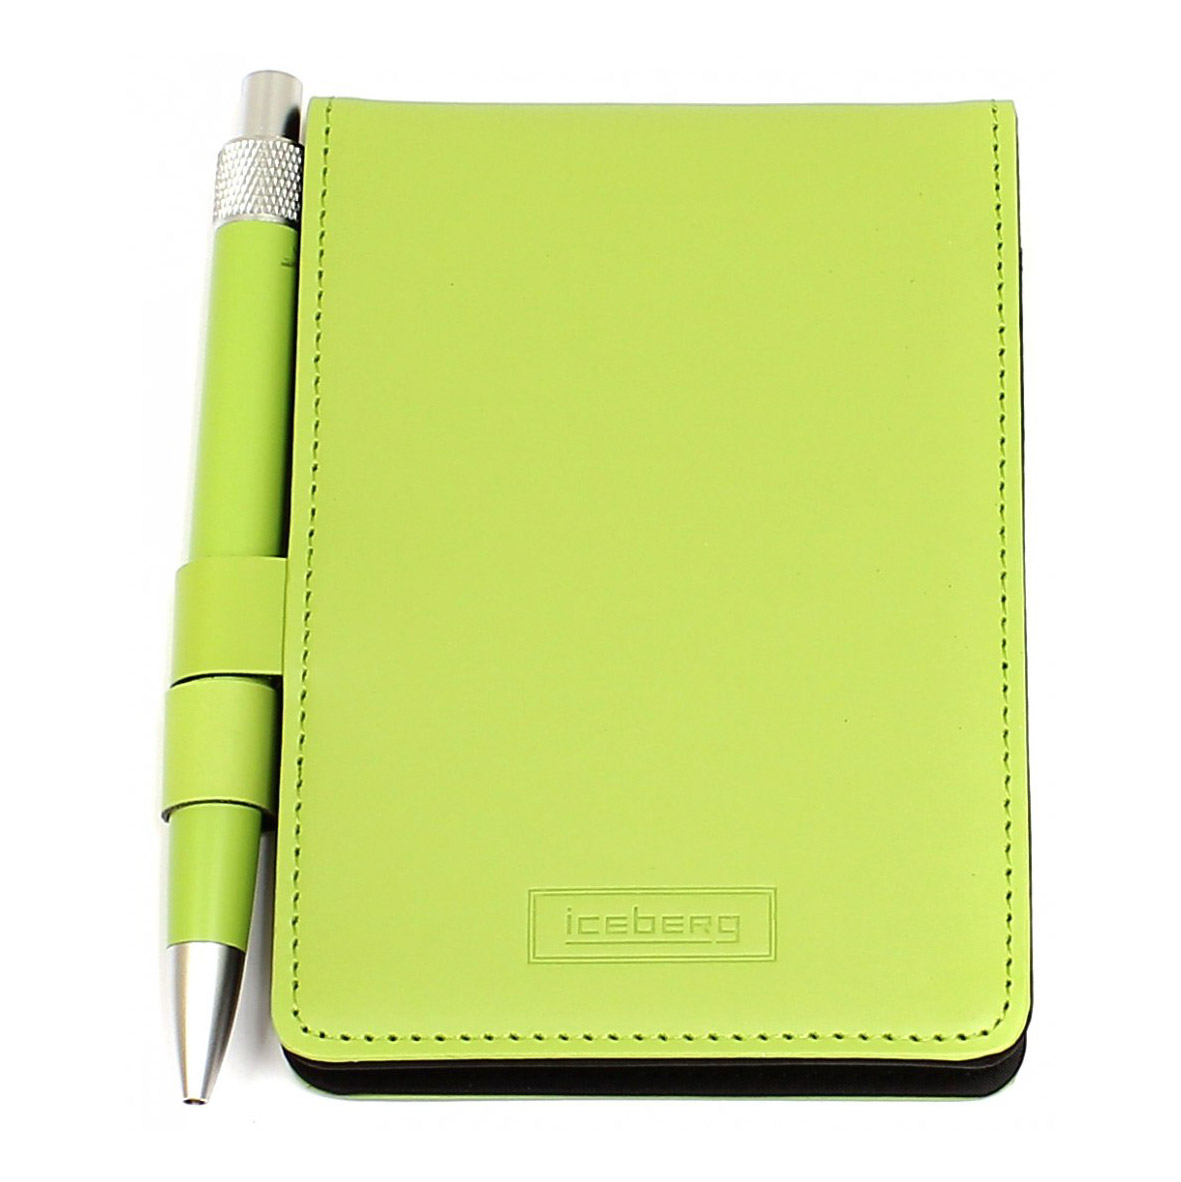 Блокнот для записей ICEBERG с ручкой зеленый